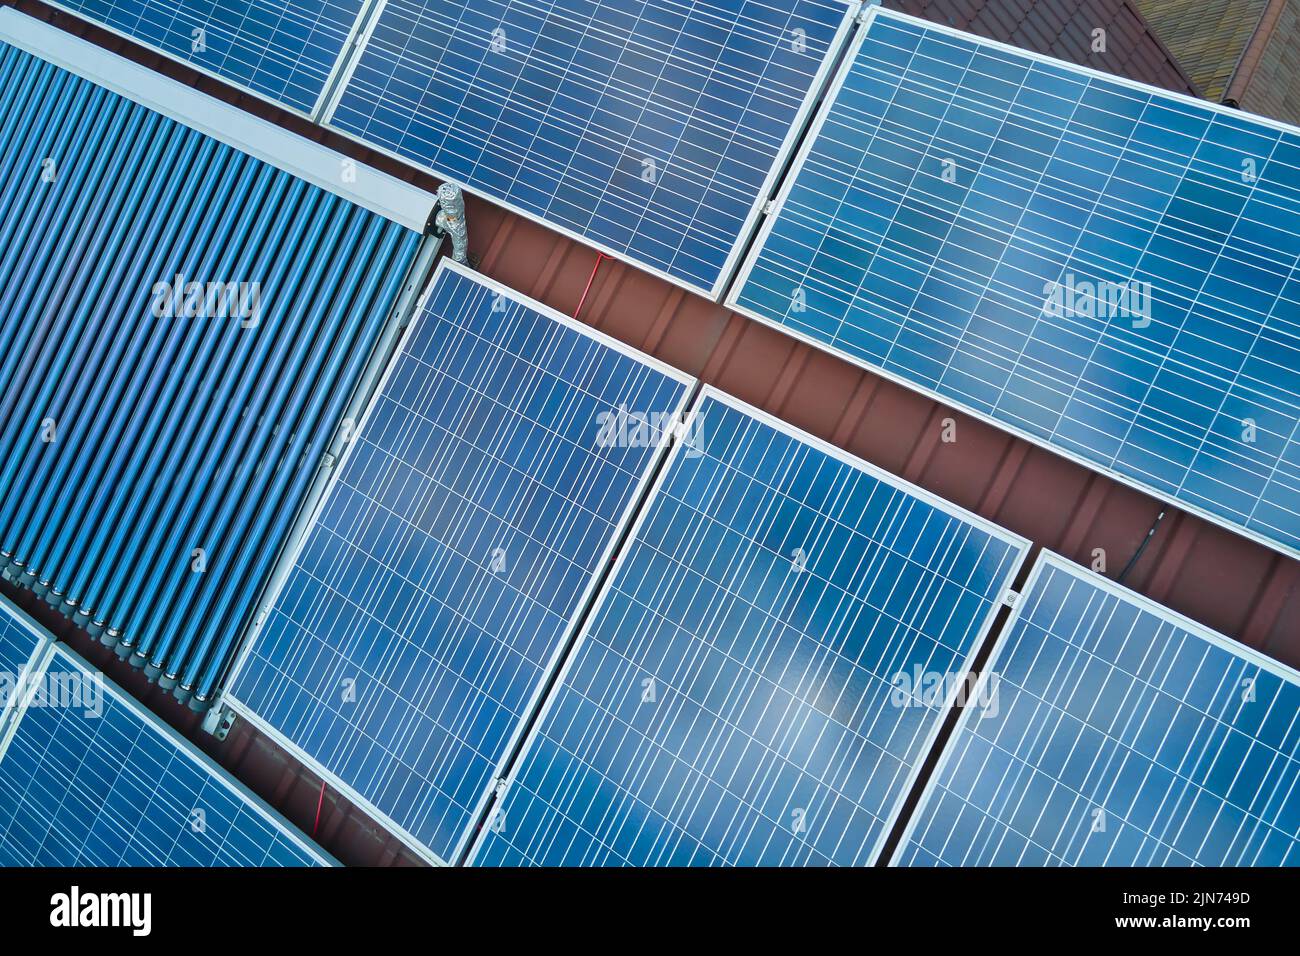 Panneaux photovoltaïques et capteurs solaires d'air à vide pour le chauffage de l'eau et la production d'électricité propre montés sur le toit de la maison. Production de Banque D'Images